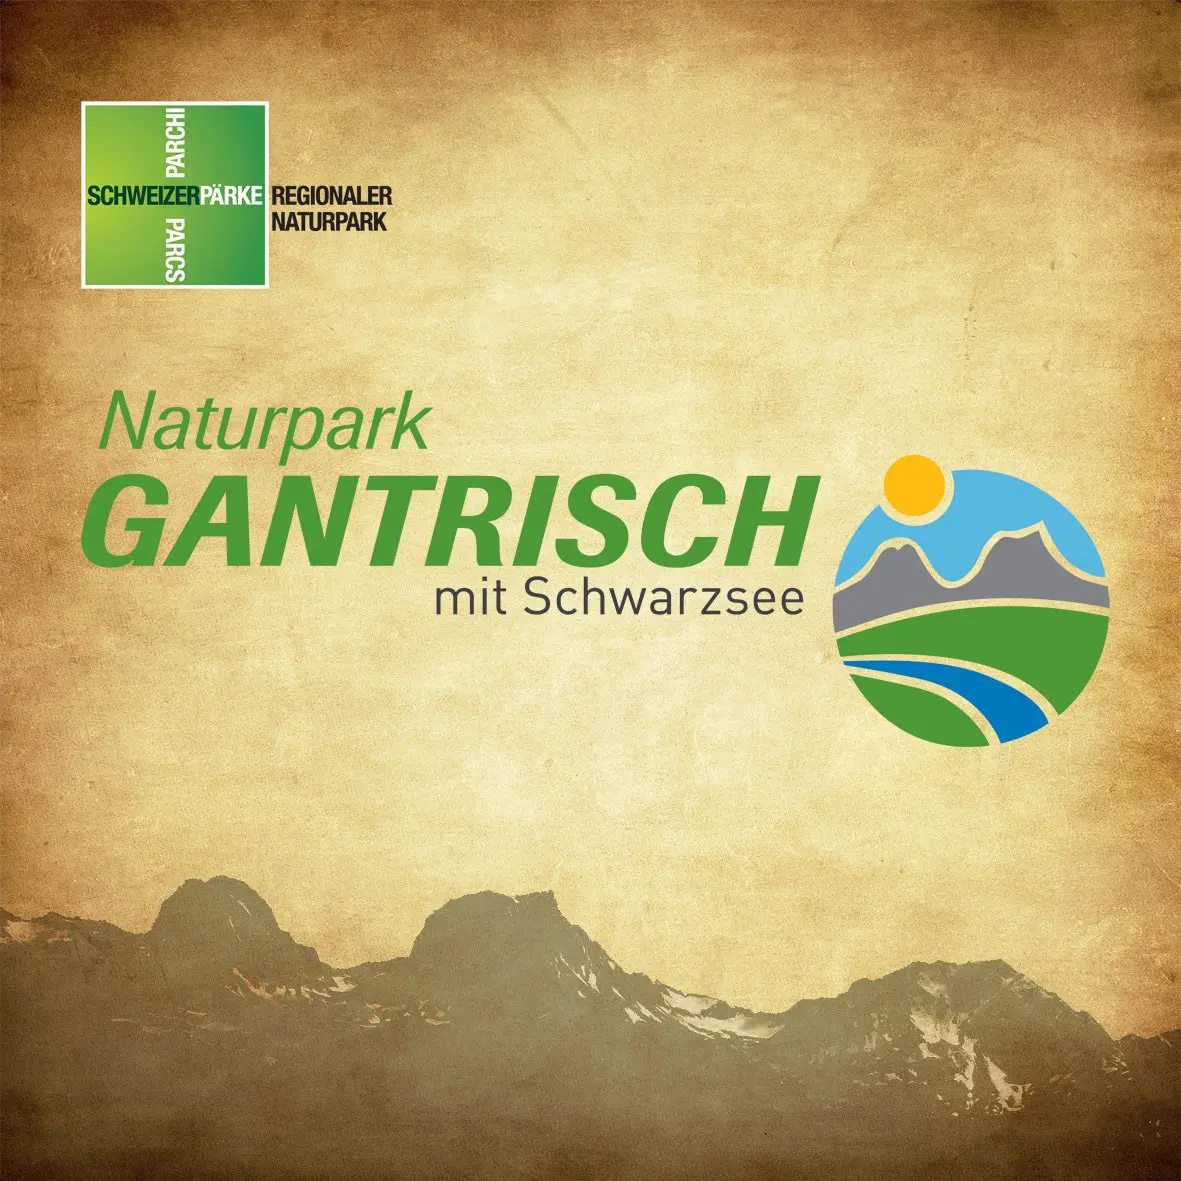 Naturpark Gantrisch